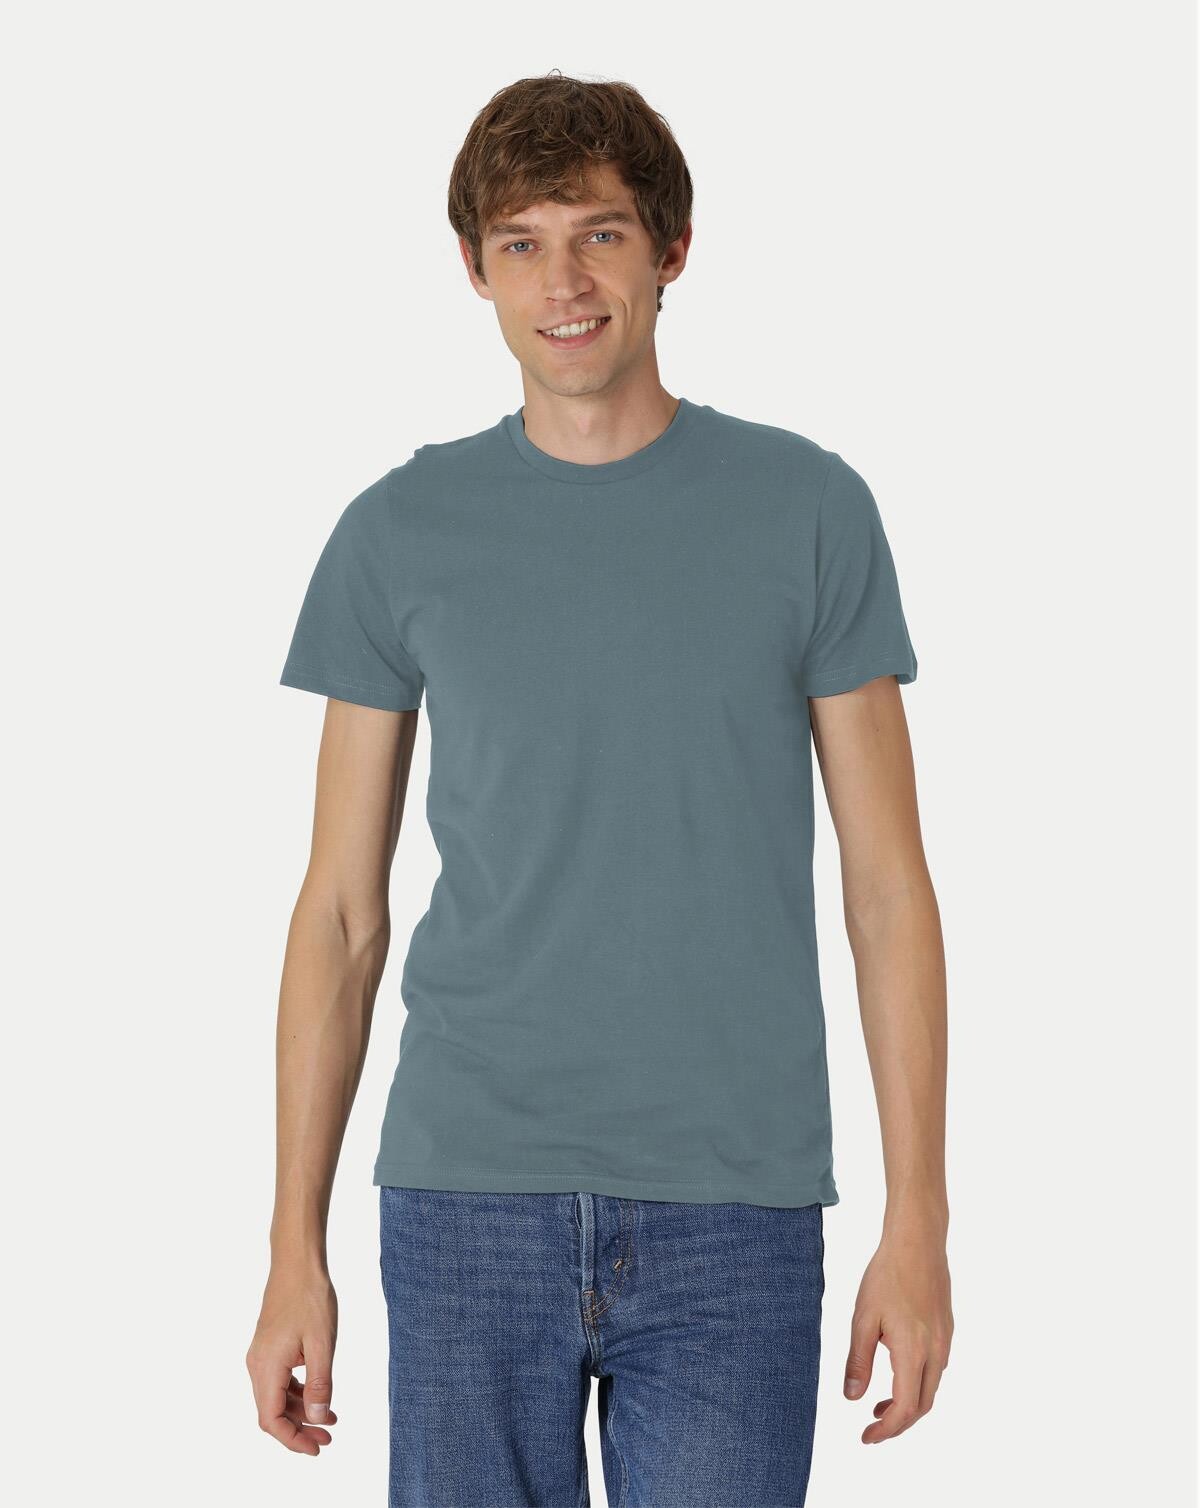 Billede af Neutral Organic - Mens Fitted T-shirt (Teal, L)